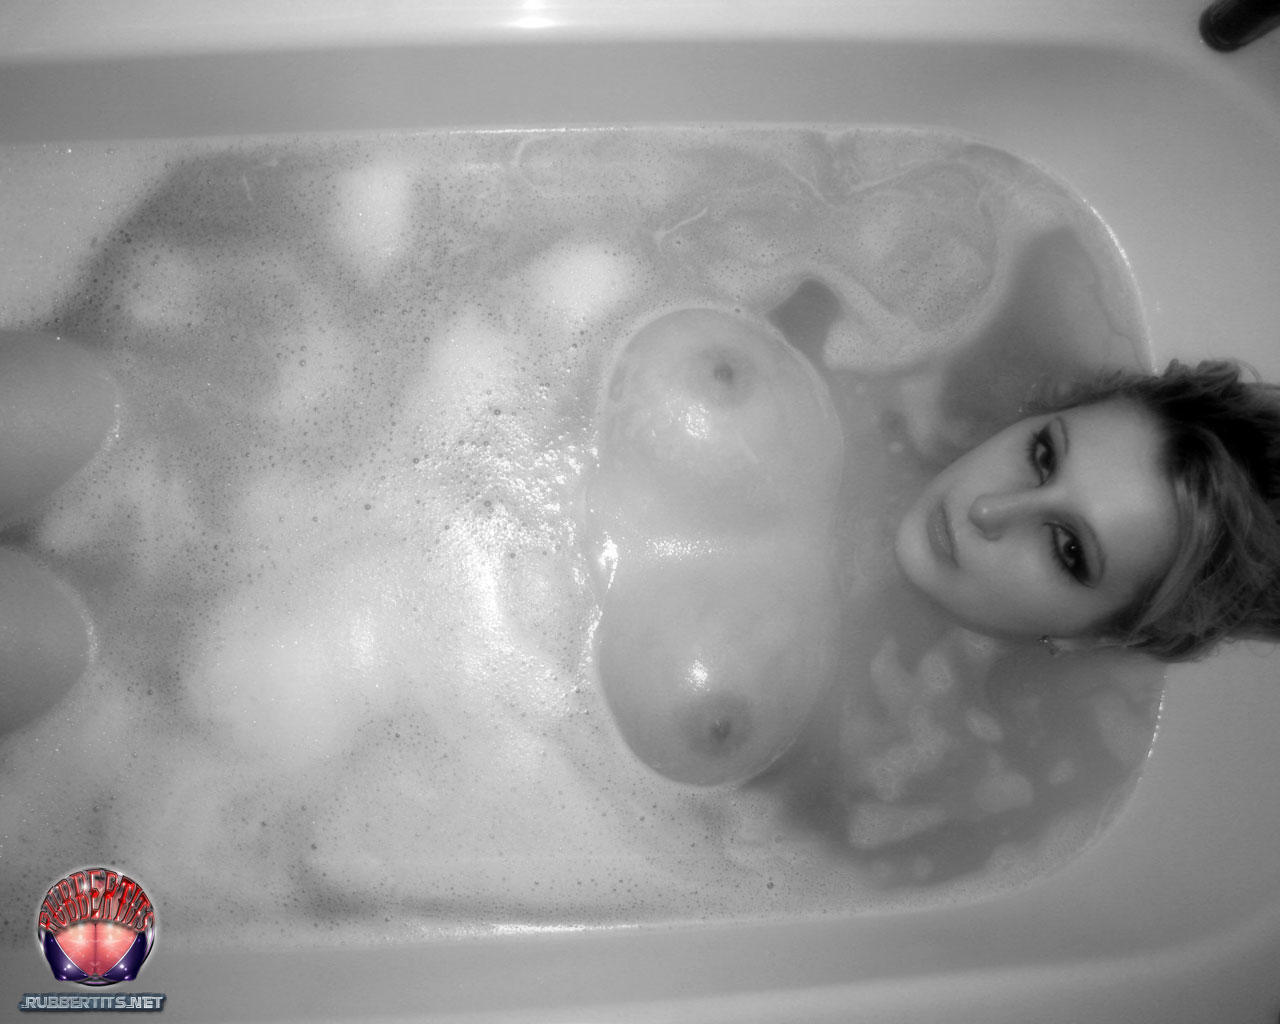 Rubber Tits Bathtime foto porno #426805766